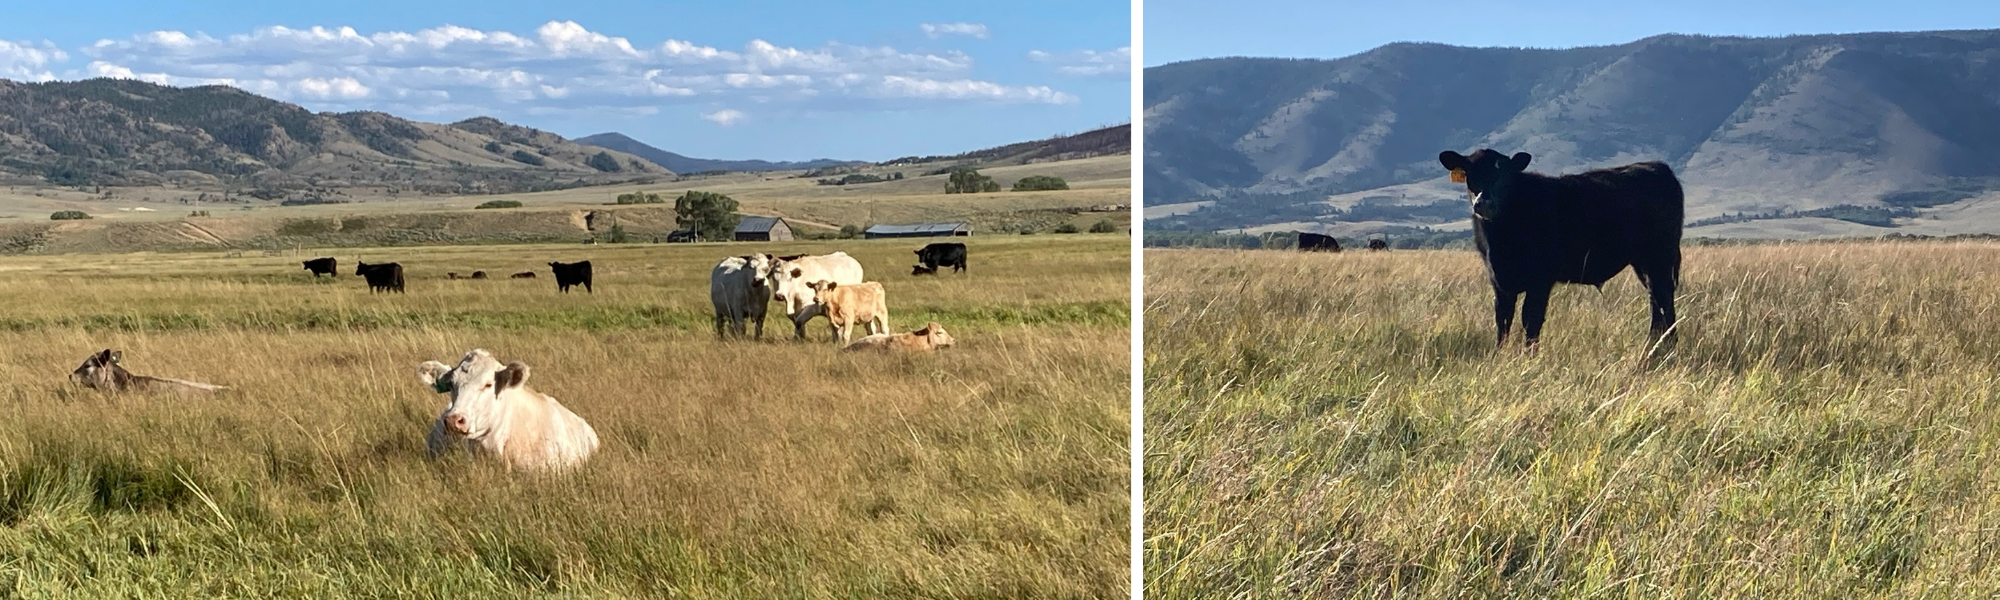 cows grazing in an open field 